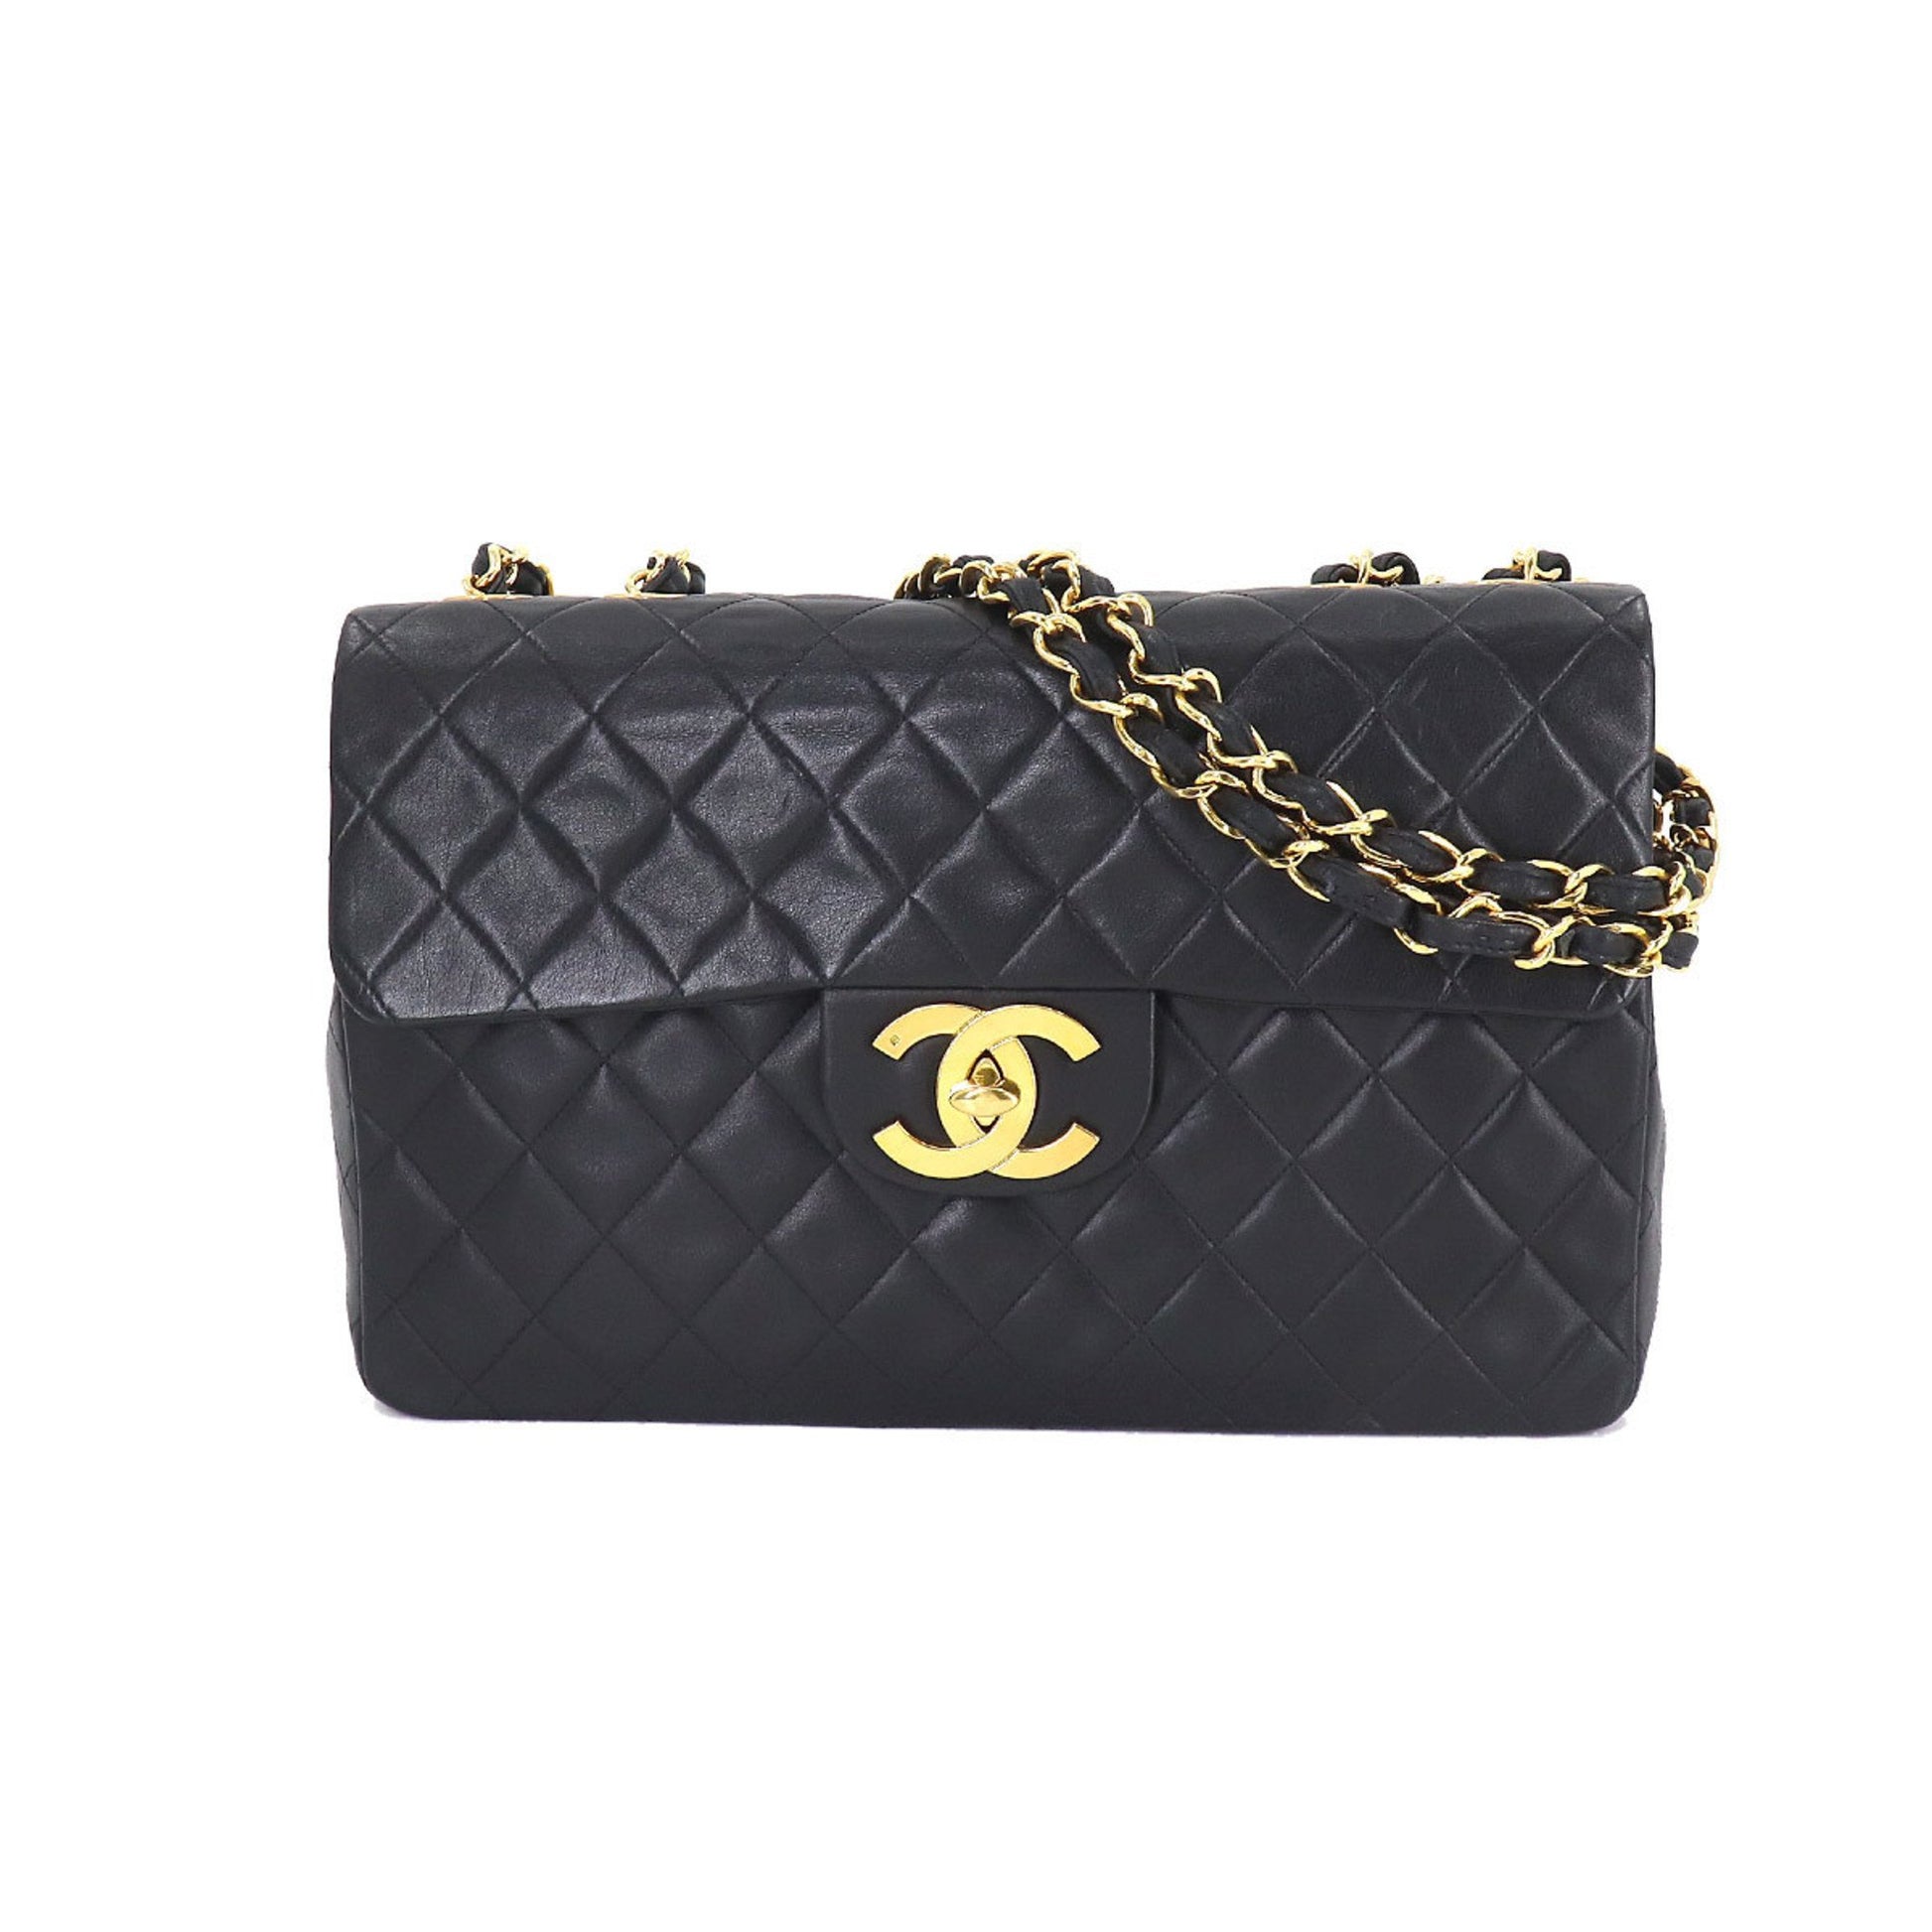 Chanel Decamato matelasse 34 chain shoulder bag leather black A01094 v